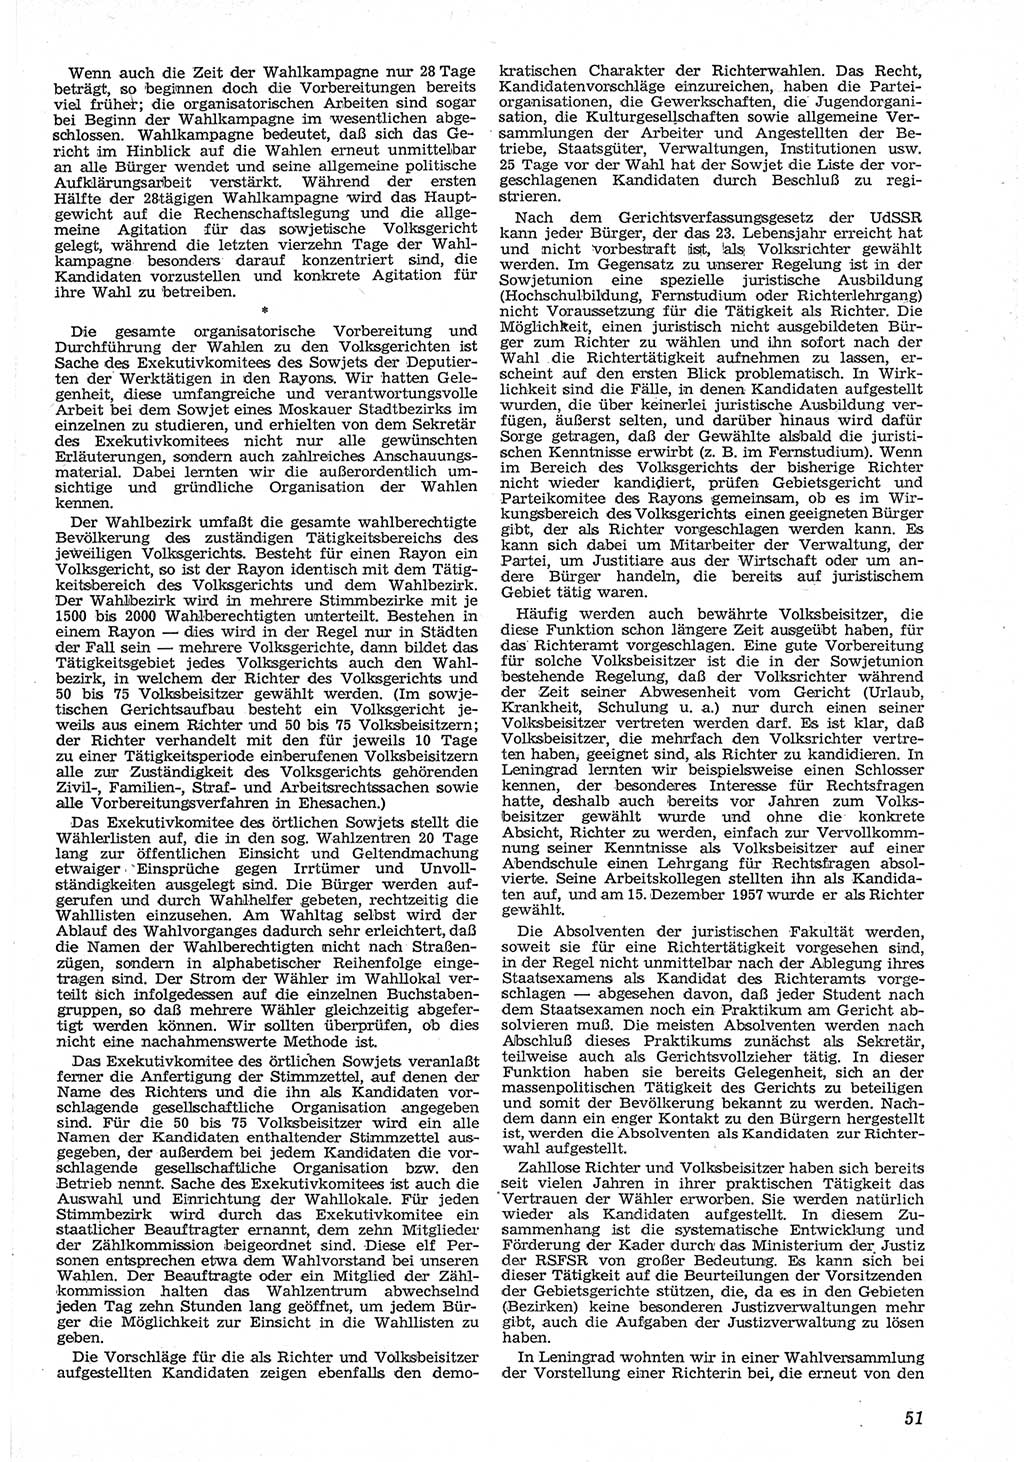 Neue Justiz (NJ), Zeitschrift für Recht und Rechtswissenschaft [Deutsche Demokratische Republik (DDR)], 12. Jahrgang 1958, Seite 51 (NJ DDR 1958, S. 51)